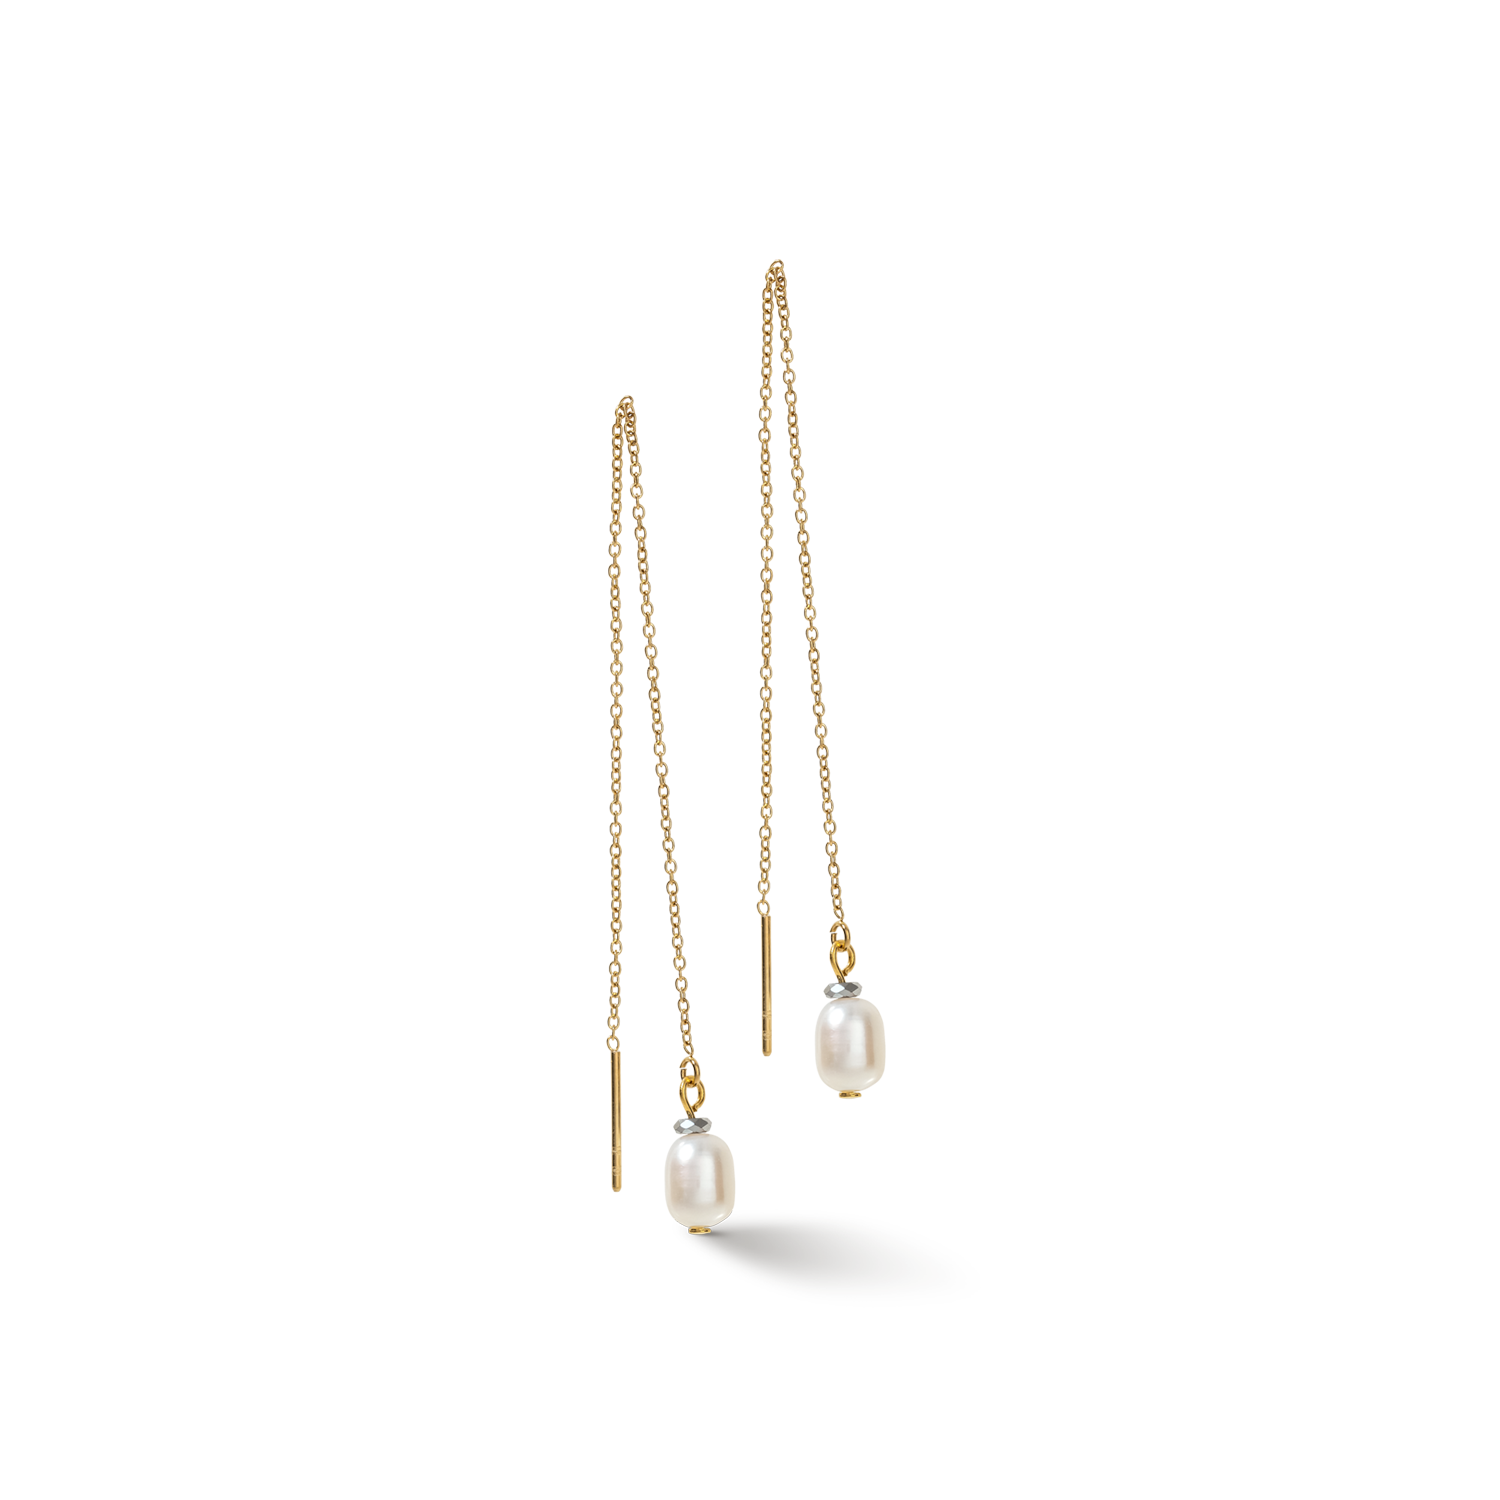 Orecchini Y Chain & Perle ovali d'acqua Dolce oro bianco